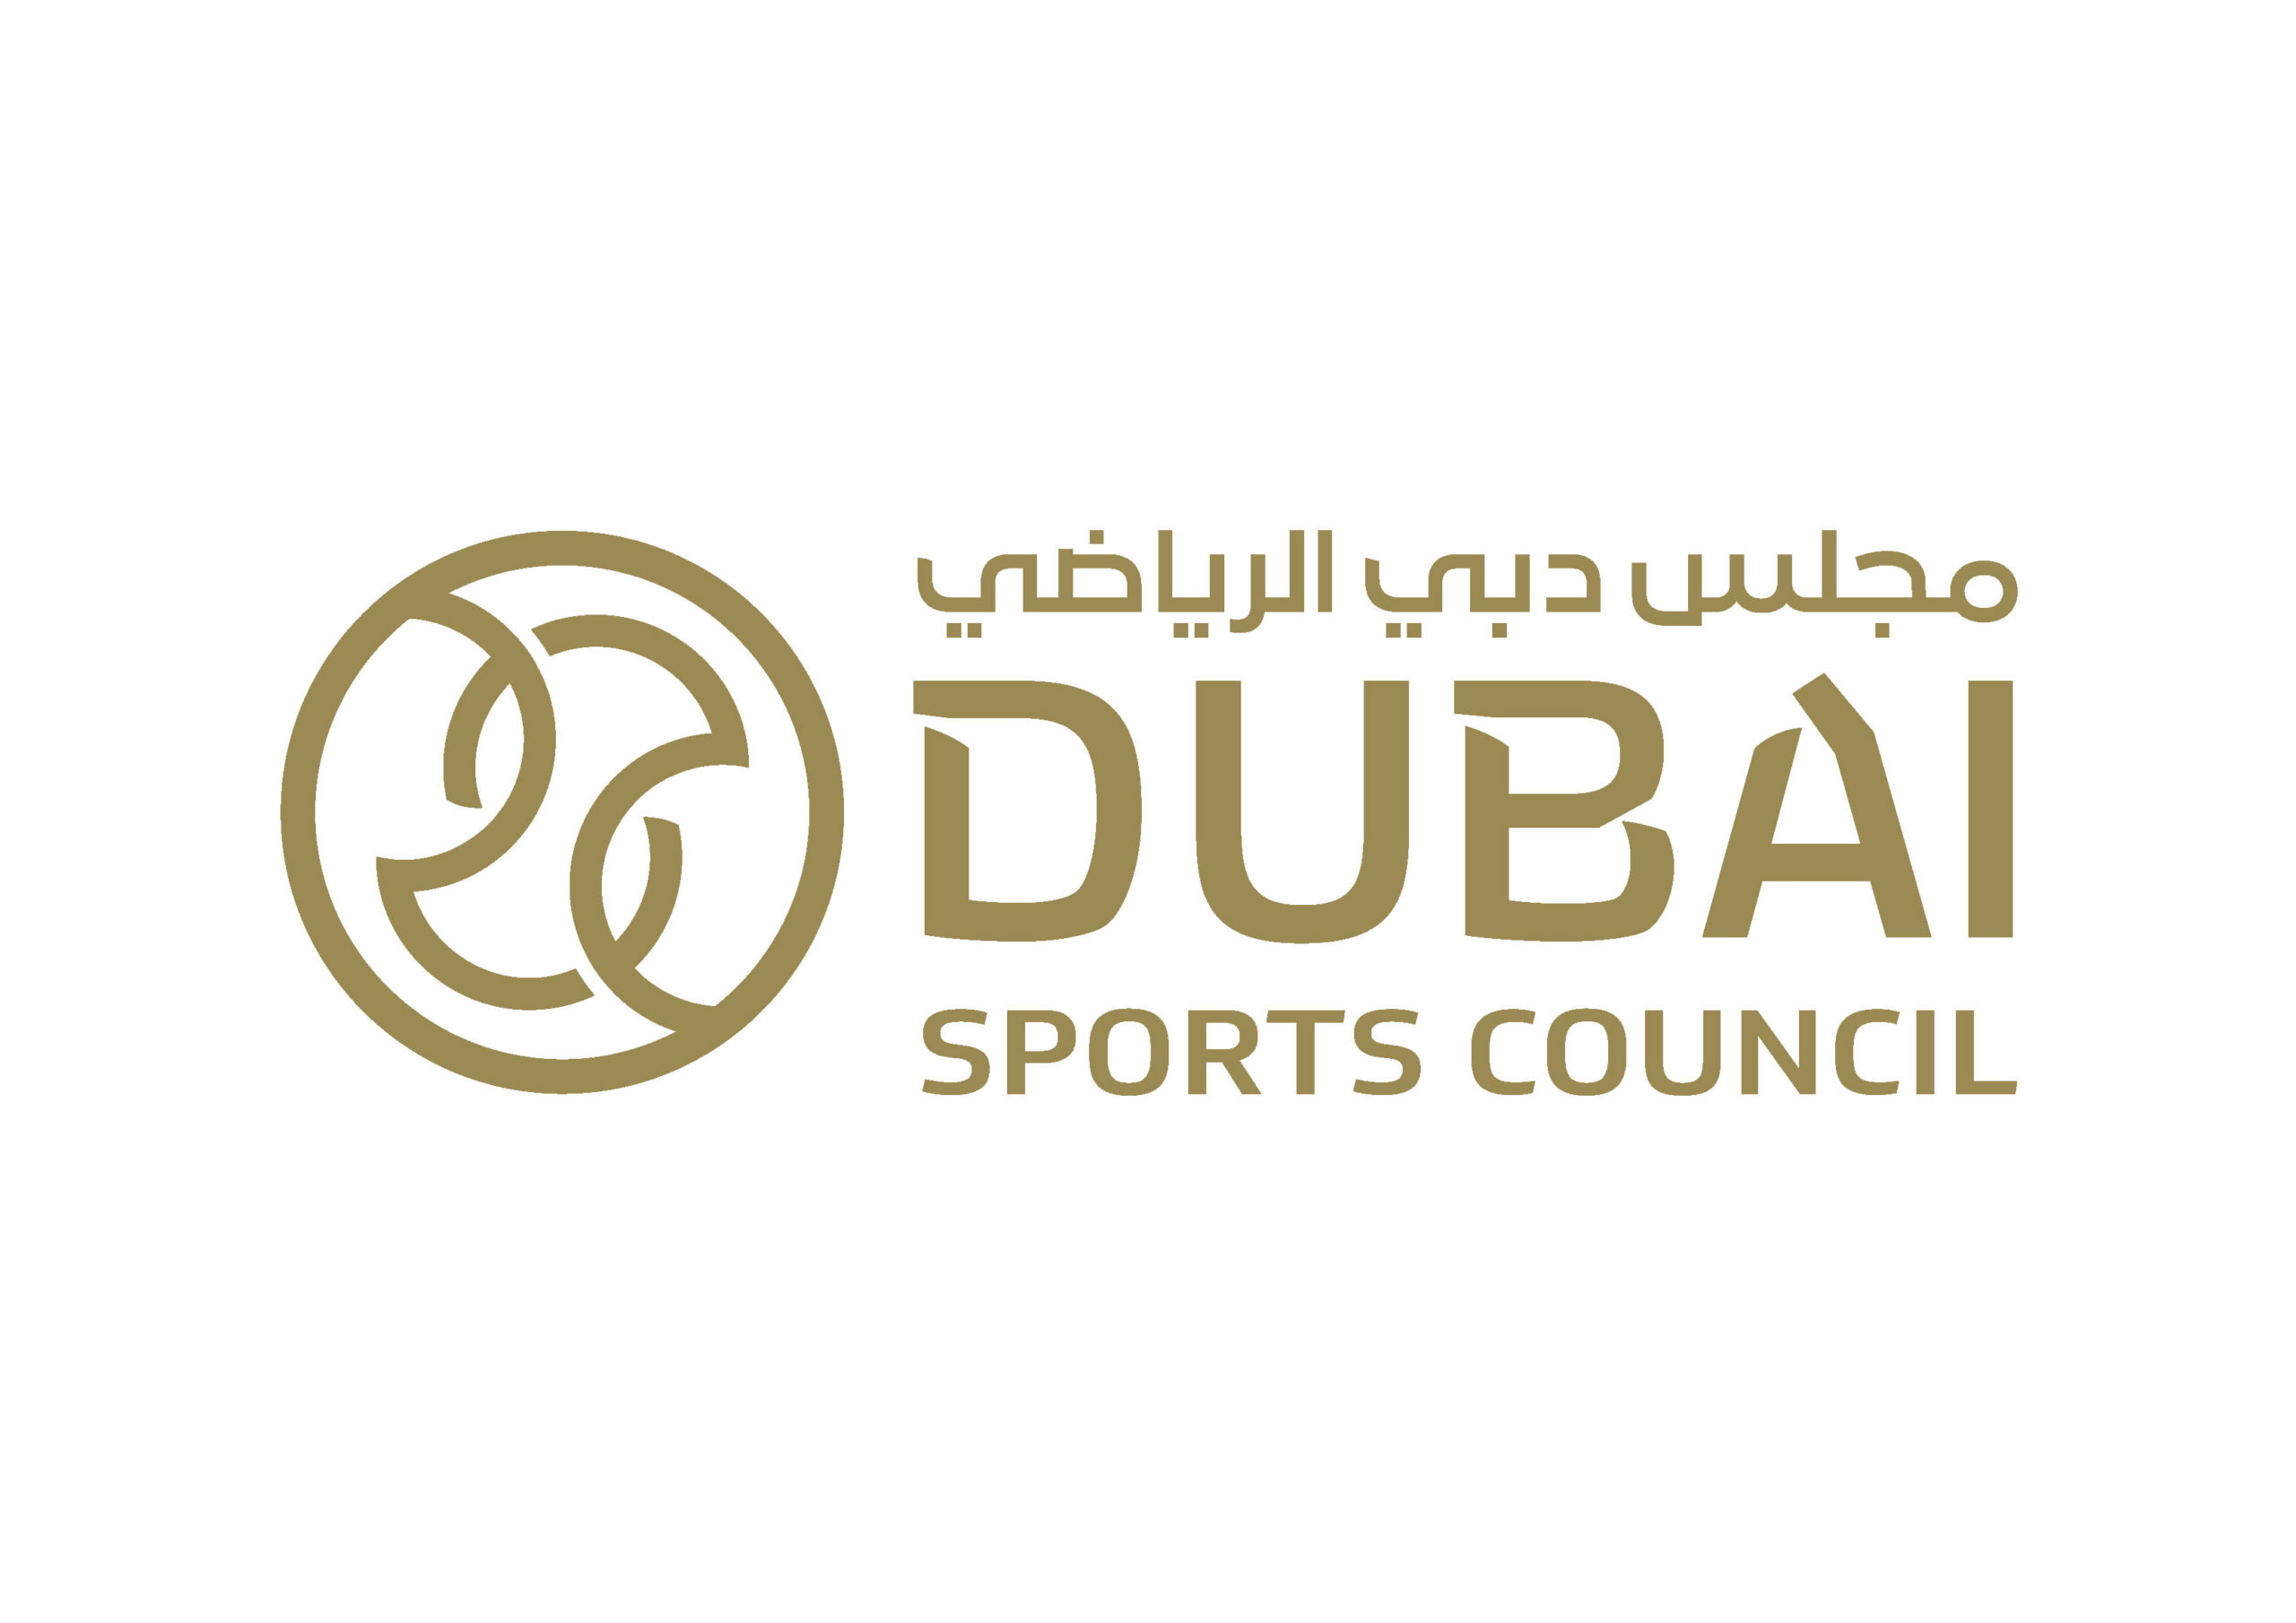 Dubai council